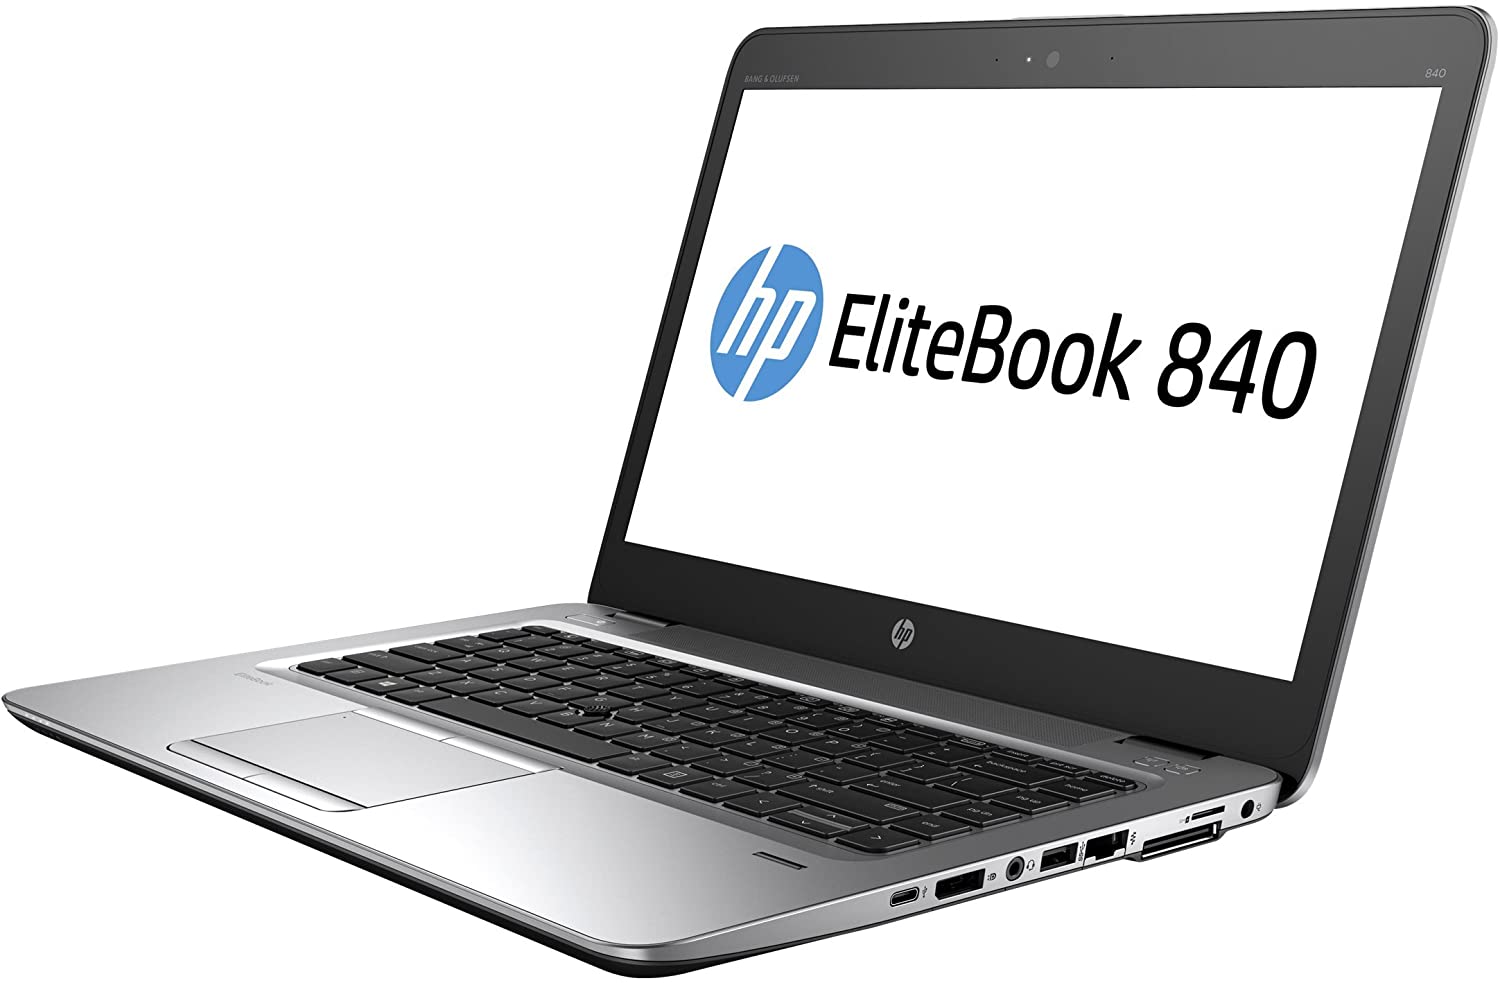 Portátil Ultrabook HP Elitebook 840 G3 GRADO A con teclado en castellano (Intel Core i5 6200U 2.3Ghz/8GB/240SSD-M.2/14FHD/NO-DVD/W10P) Preinstalado